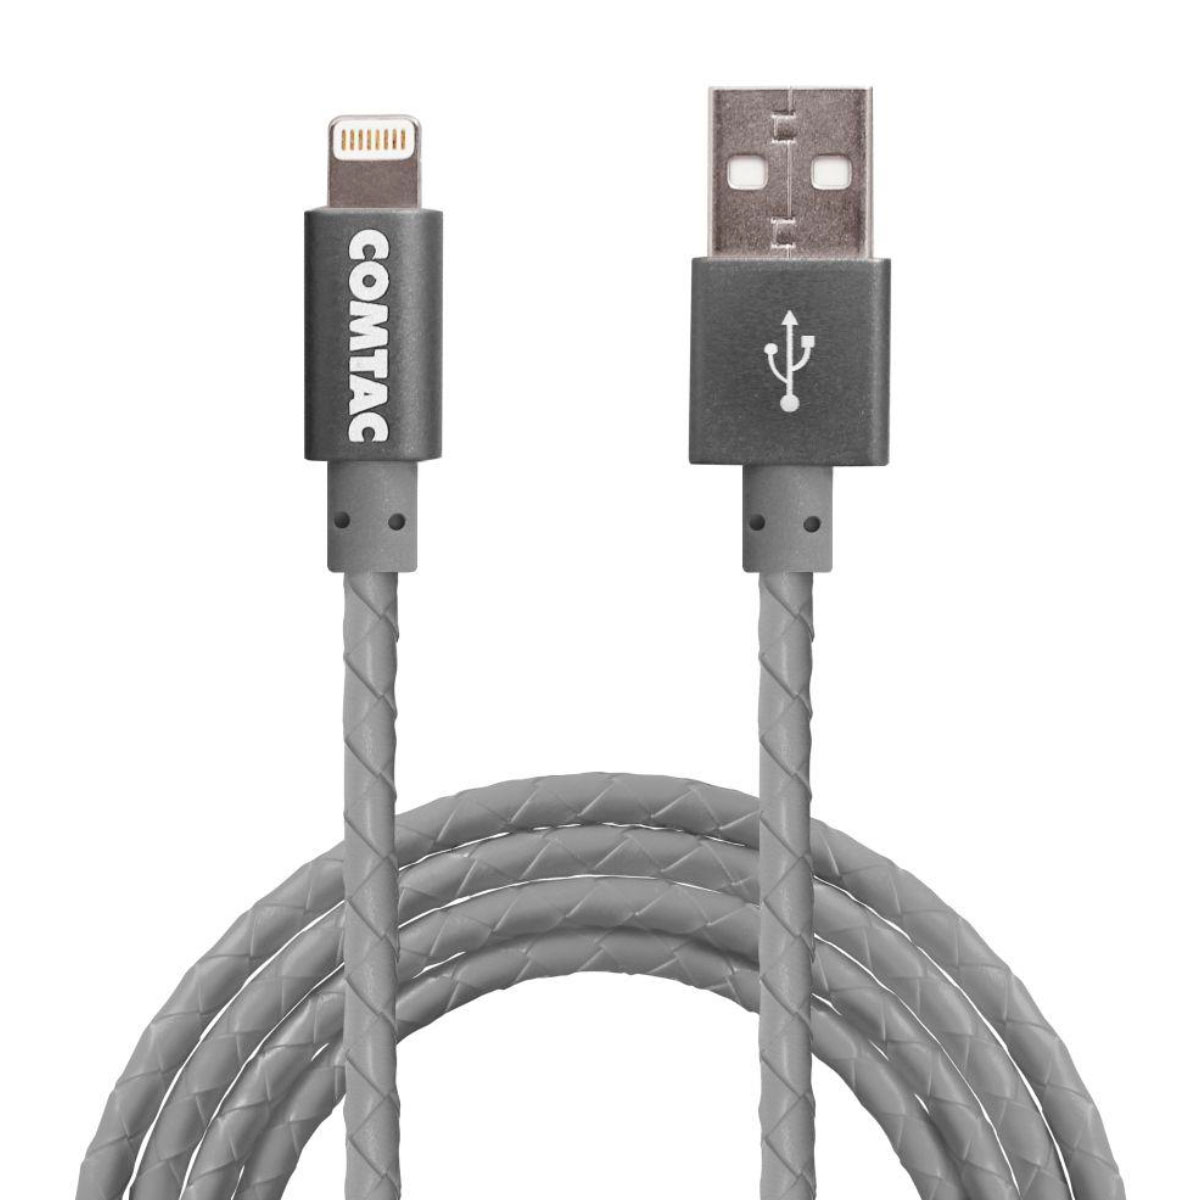 Cabo Lightning para USB - com Certificação MFI - 1 metro - Cinza - Comtac 9370